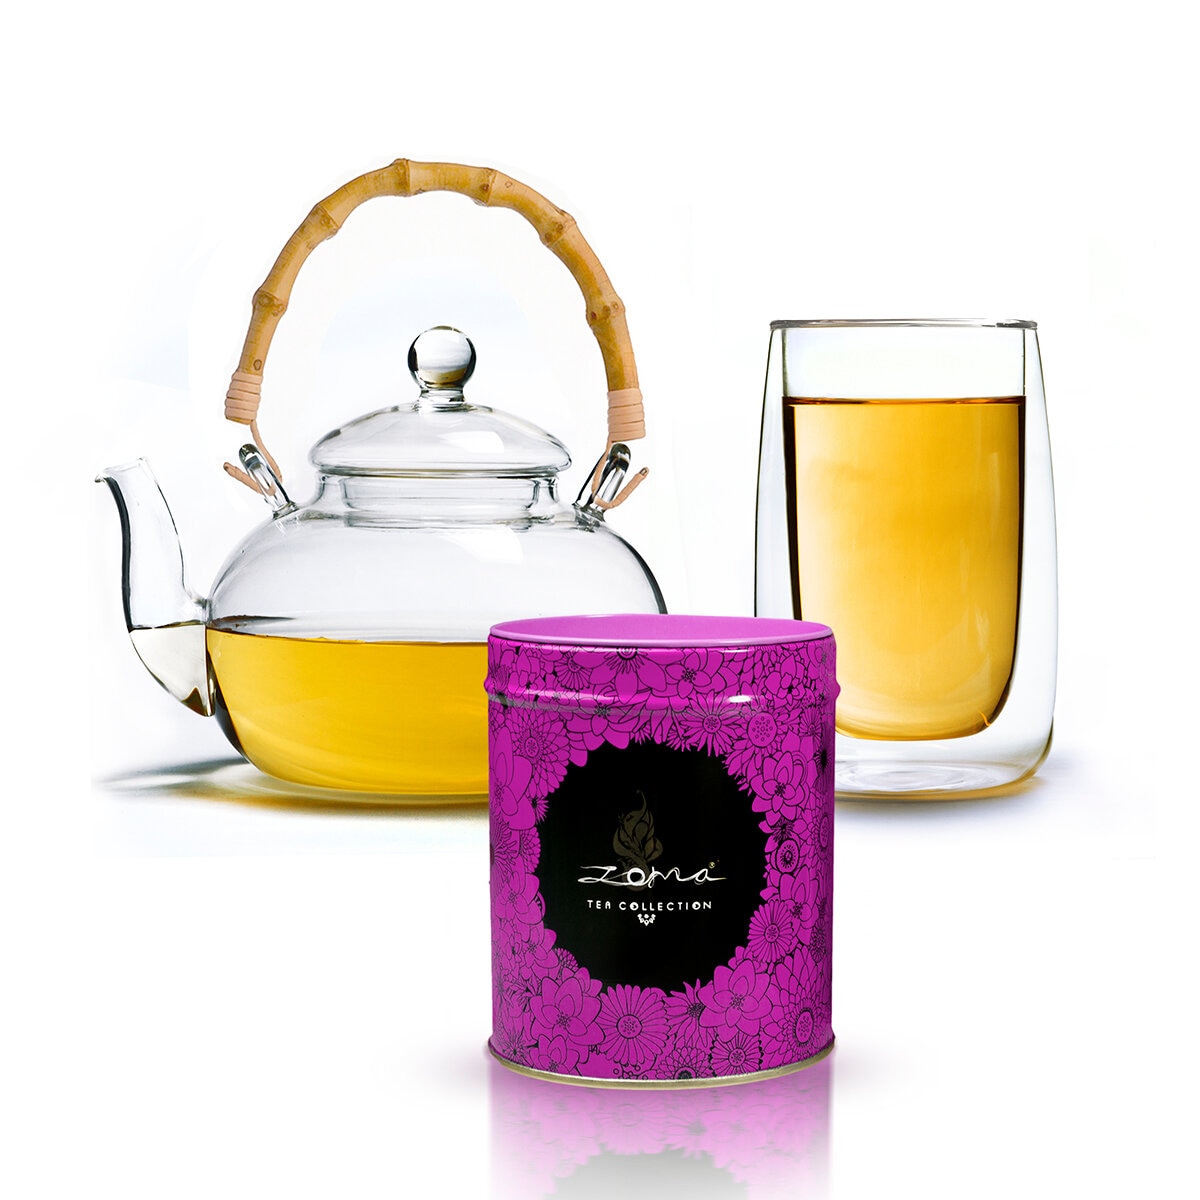 Zoma Tea Collection Vaso de doble cristal, una tetera y un té de 80g